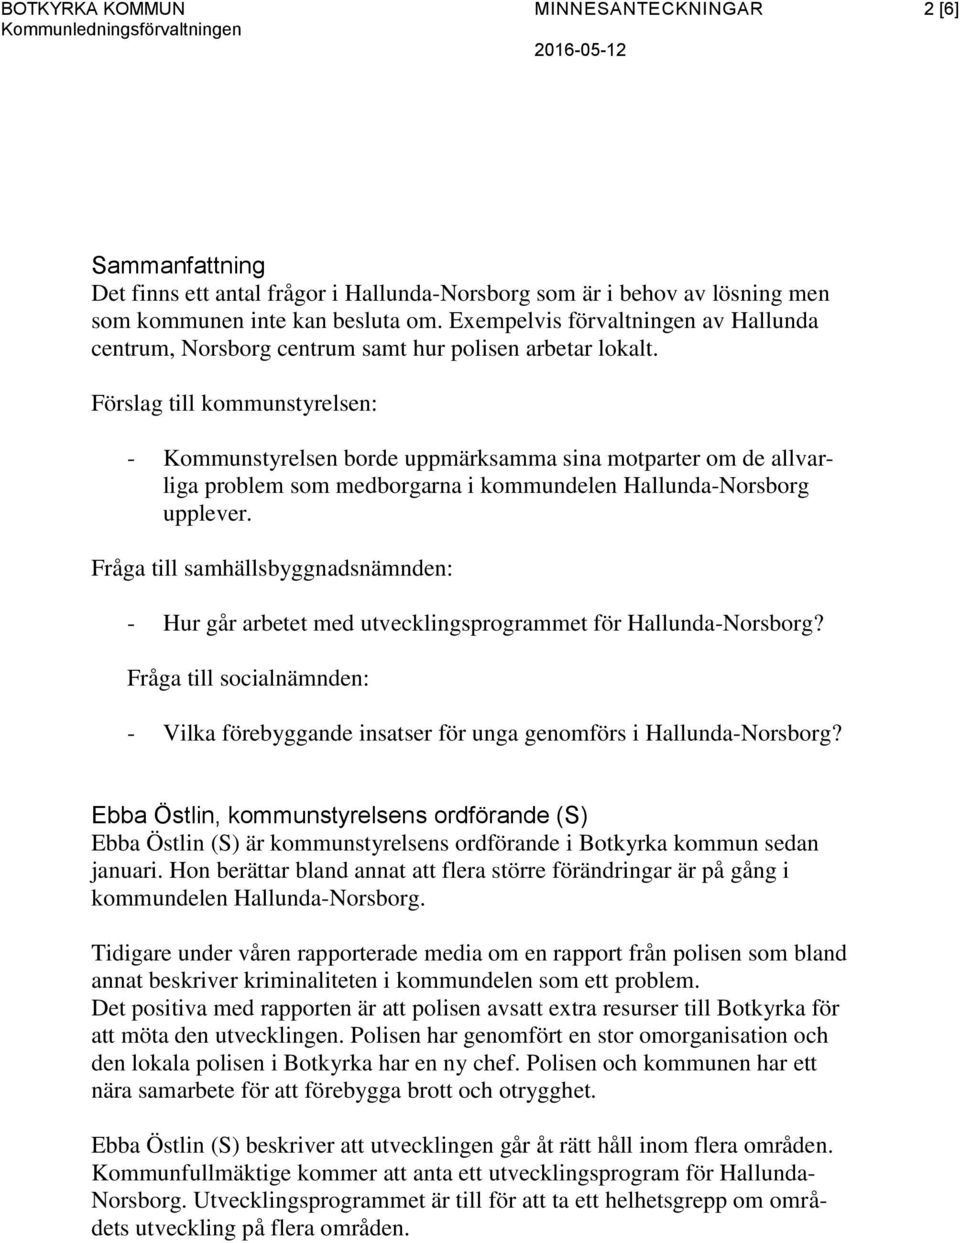 Förslag till kommunstyrelsen: - Kommunstyrelsen borde uppmärksamma sina motparter om de allvarliga problem som medborgarna i kommundelen Hallunda-Norsborg upplever.